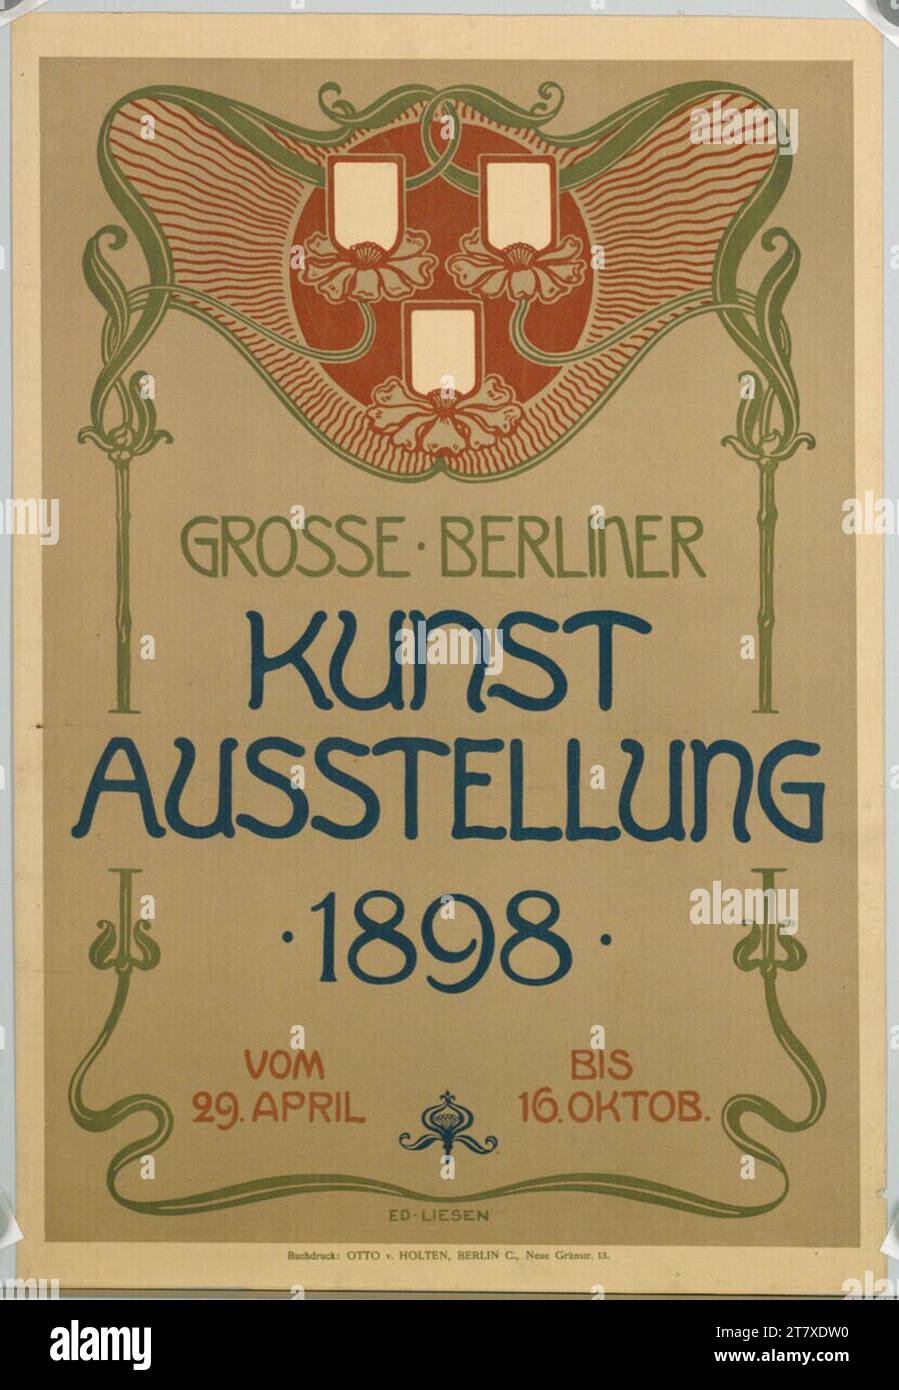 Eduard Liesen Large Berlin art exhibition 1898. Color 1898 , 1898 Stock Photo